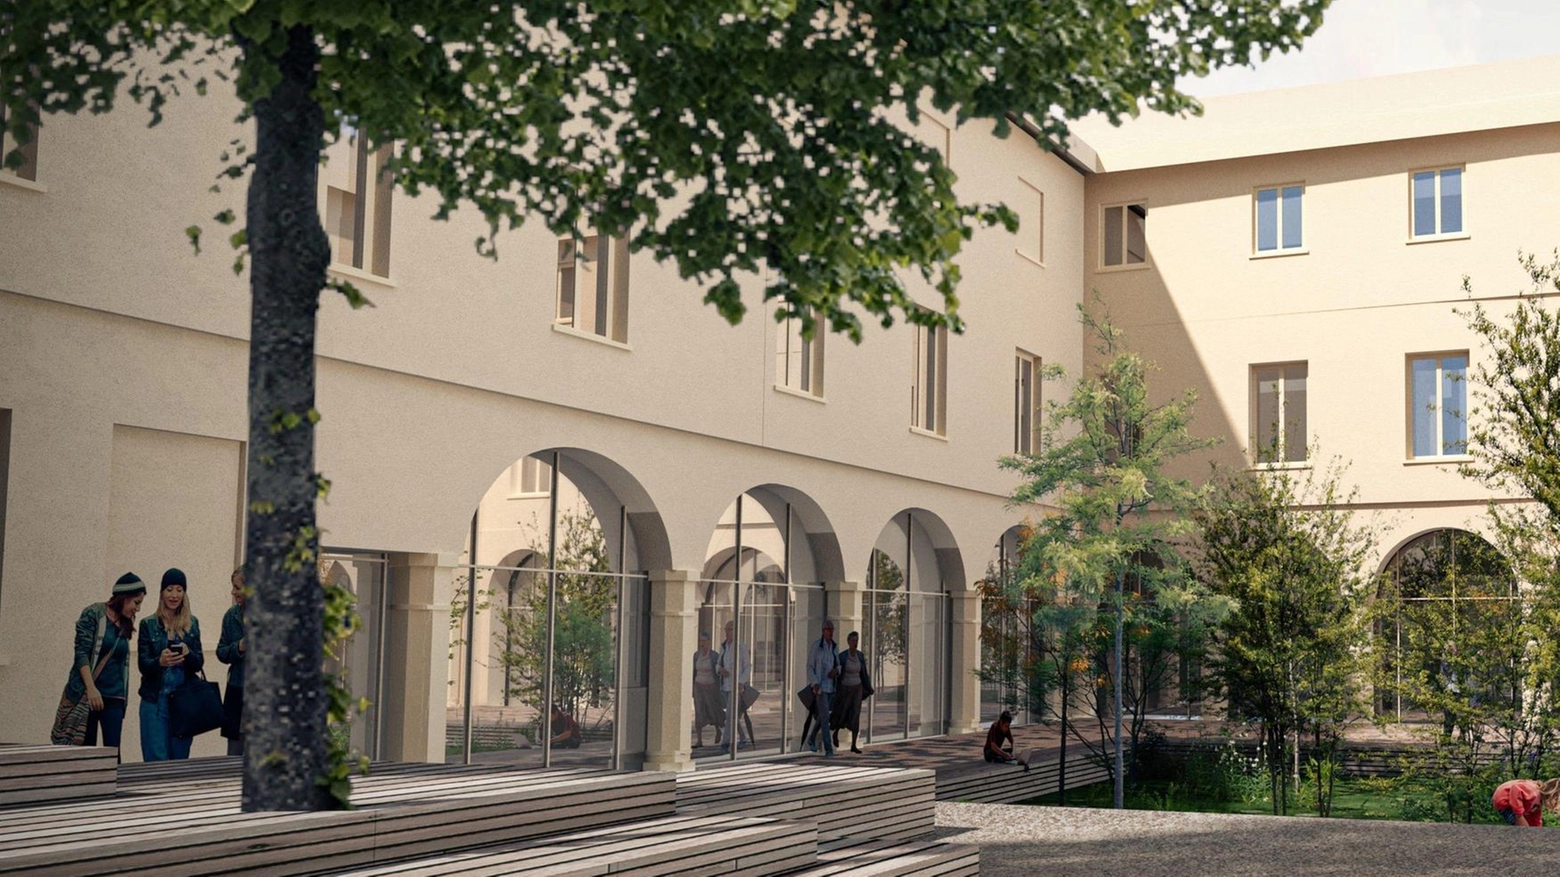 Apre il cantiere a palazzo Roverella, i lavori finiranno nel 2026